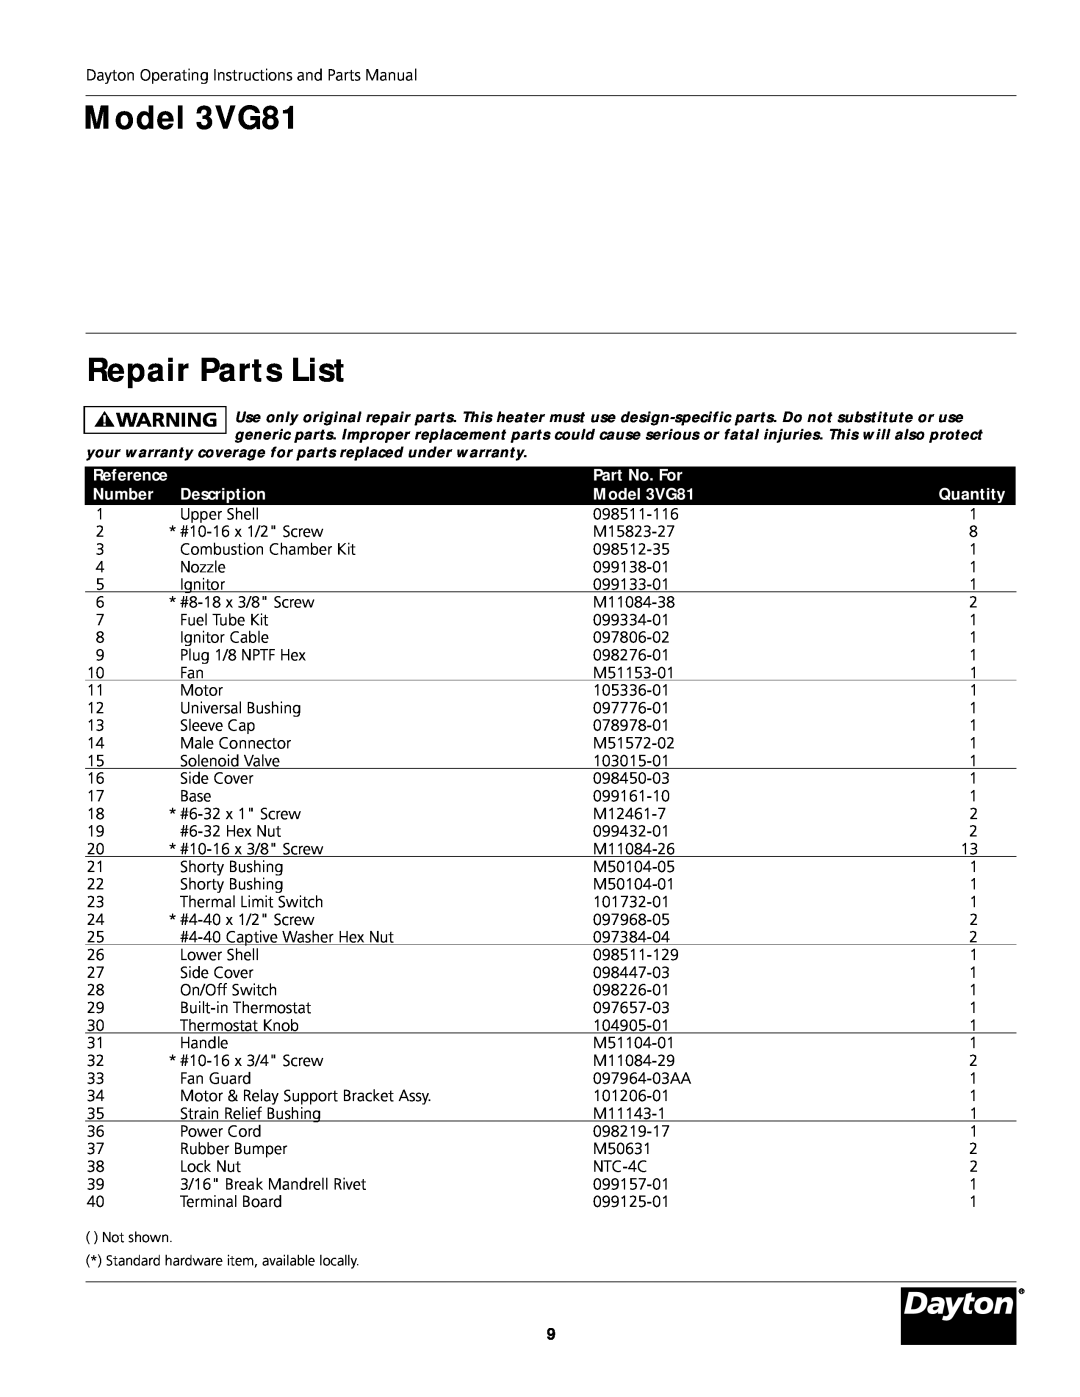 Dayton manual Model 3VG81 Repair Parts List, Part No. For, Number, Description, Quantity 